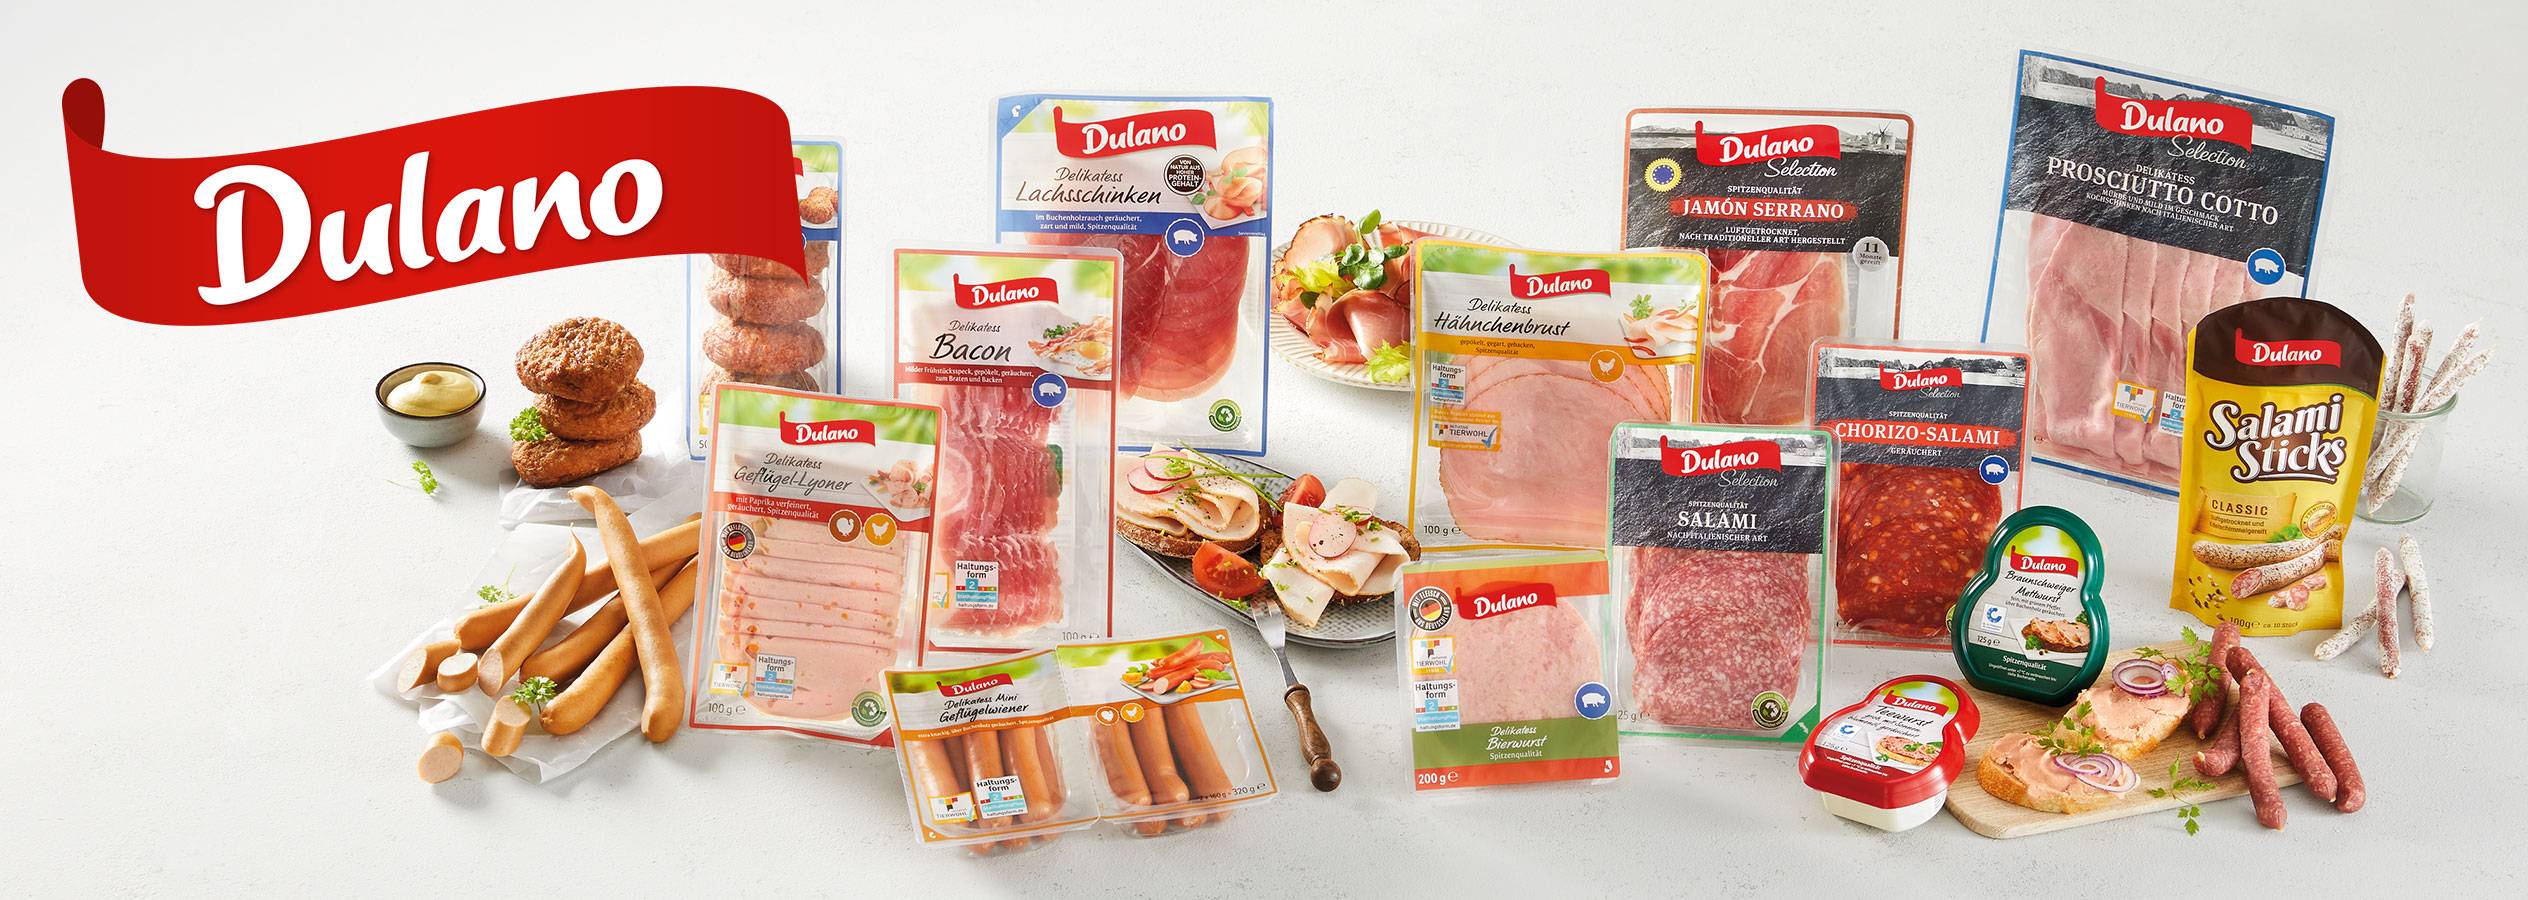 Die Lidl Qualität Eigenmarke Fleisch in Dulano: Wurst bester und für